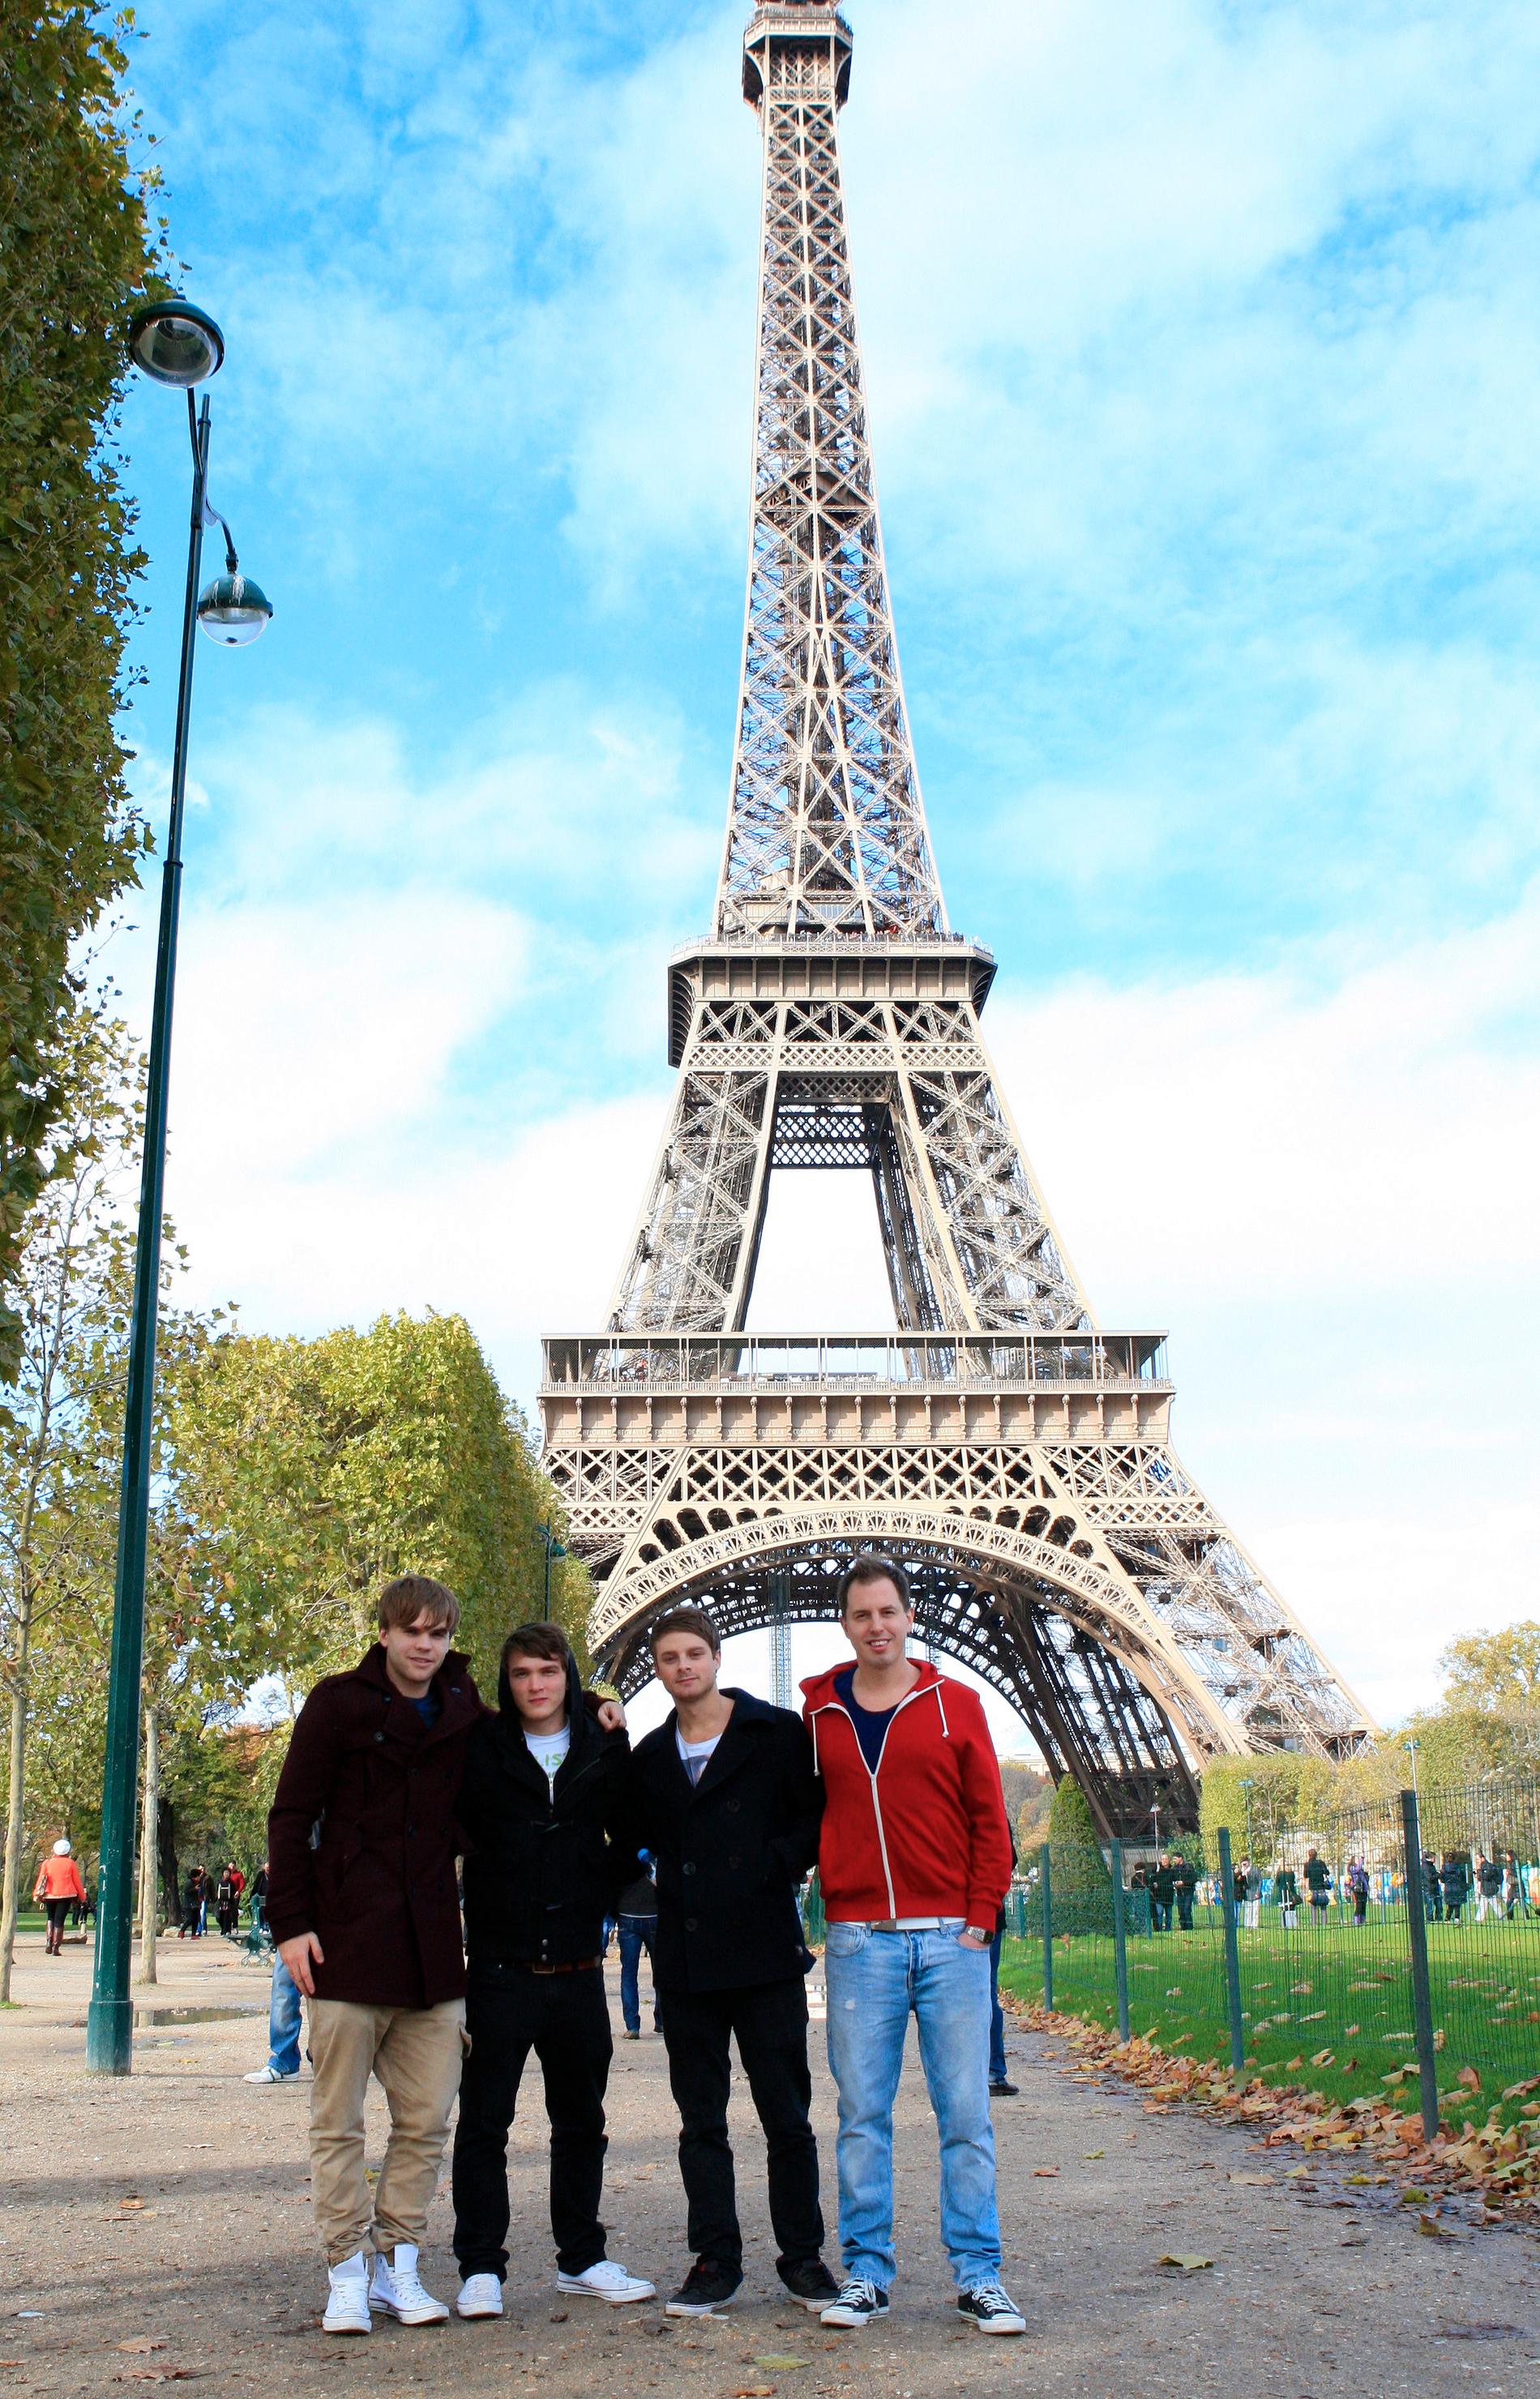 Harry I Paris Att turista är kul tycker Harry och hans vänner